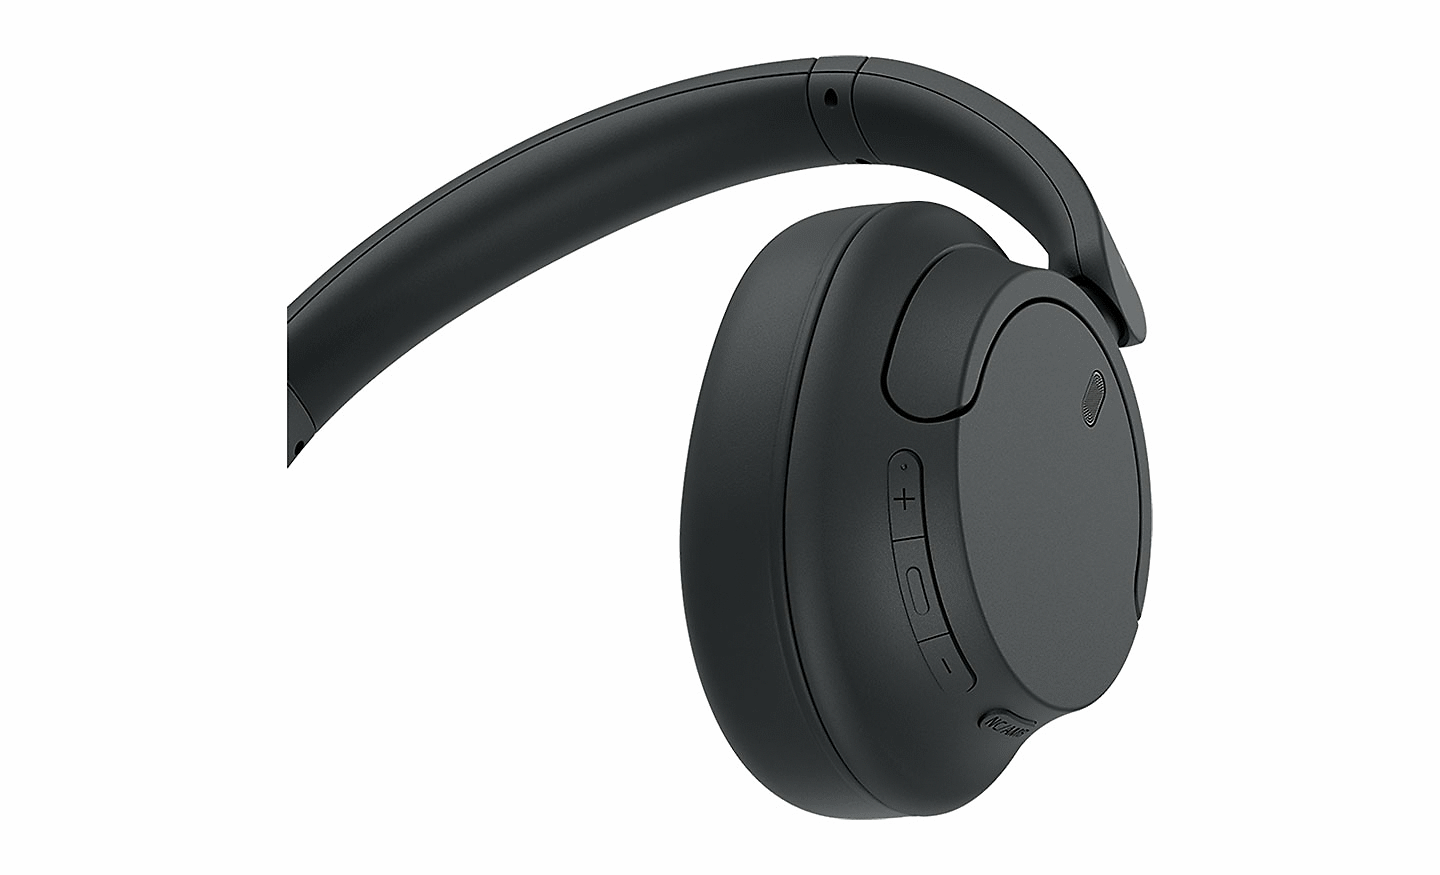 Imagen en primer plano de los botones de unos audífonos negros WH-CH720 de Sony